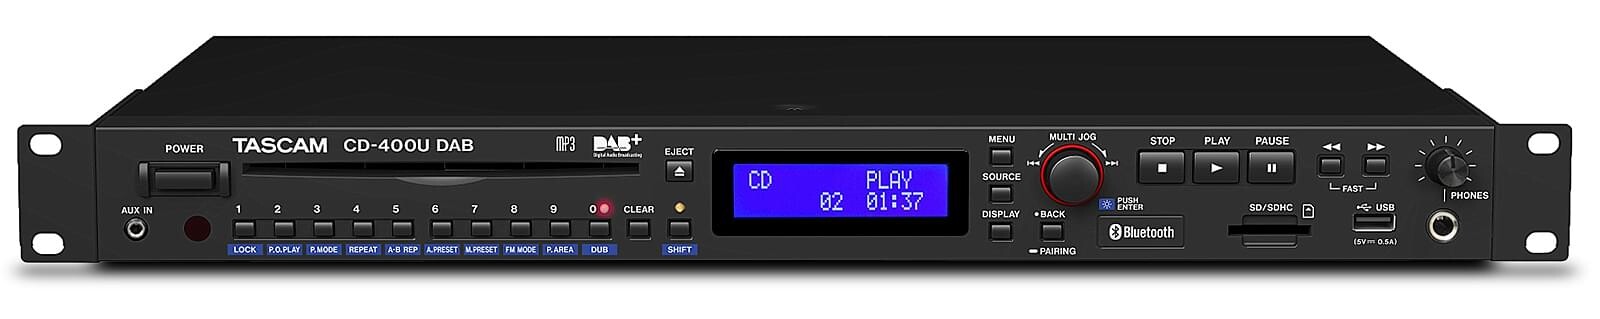 Tascam-CD-400UDAB-Medien-Player-mit-Radio-und-Bluetooth-Empfanger